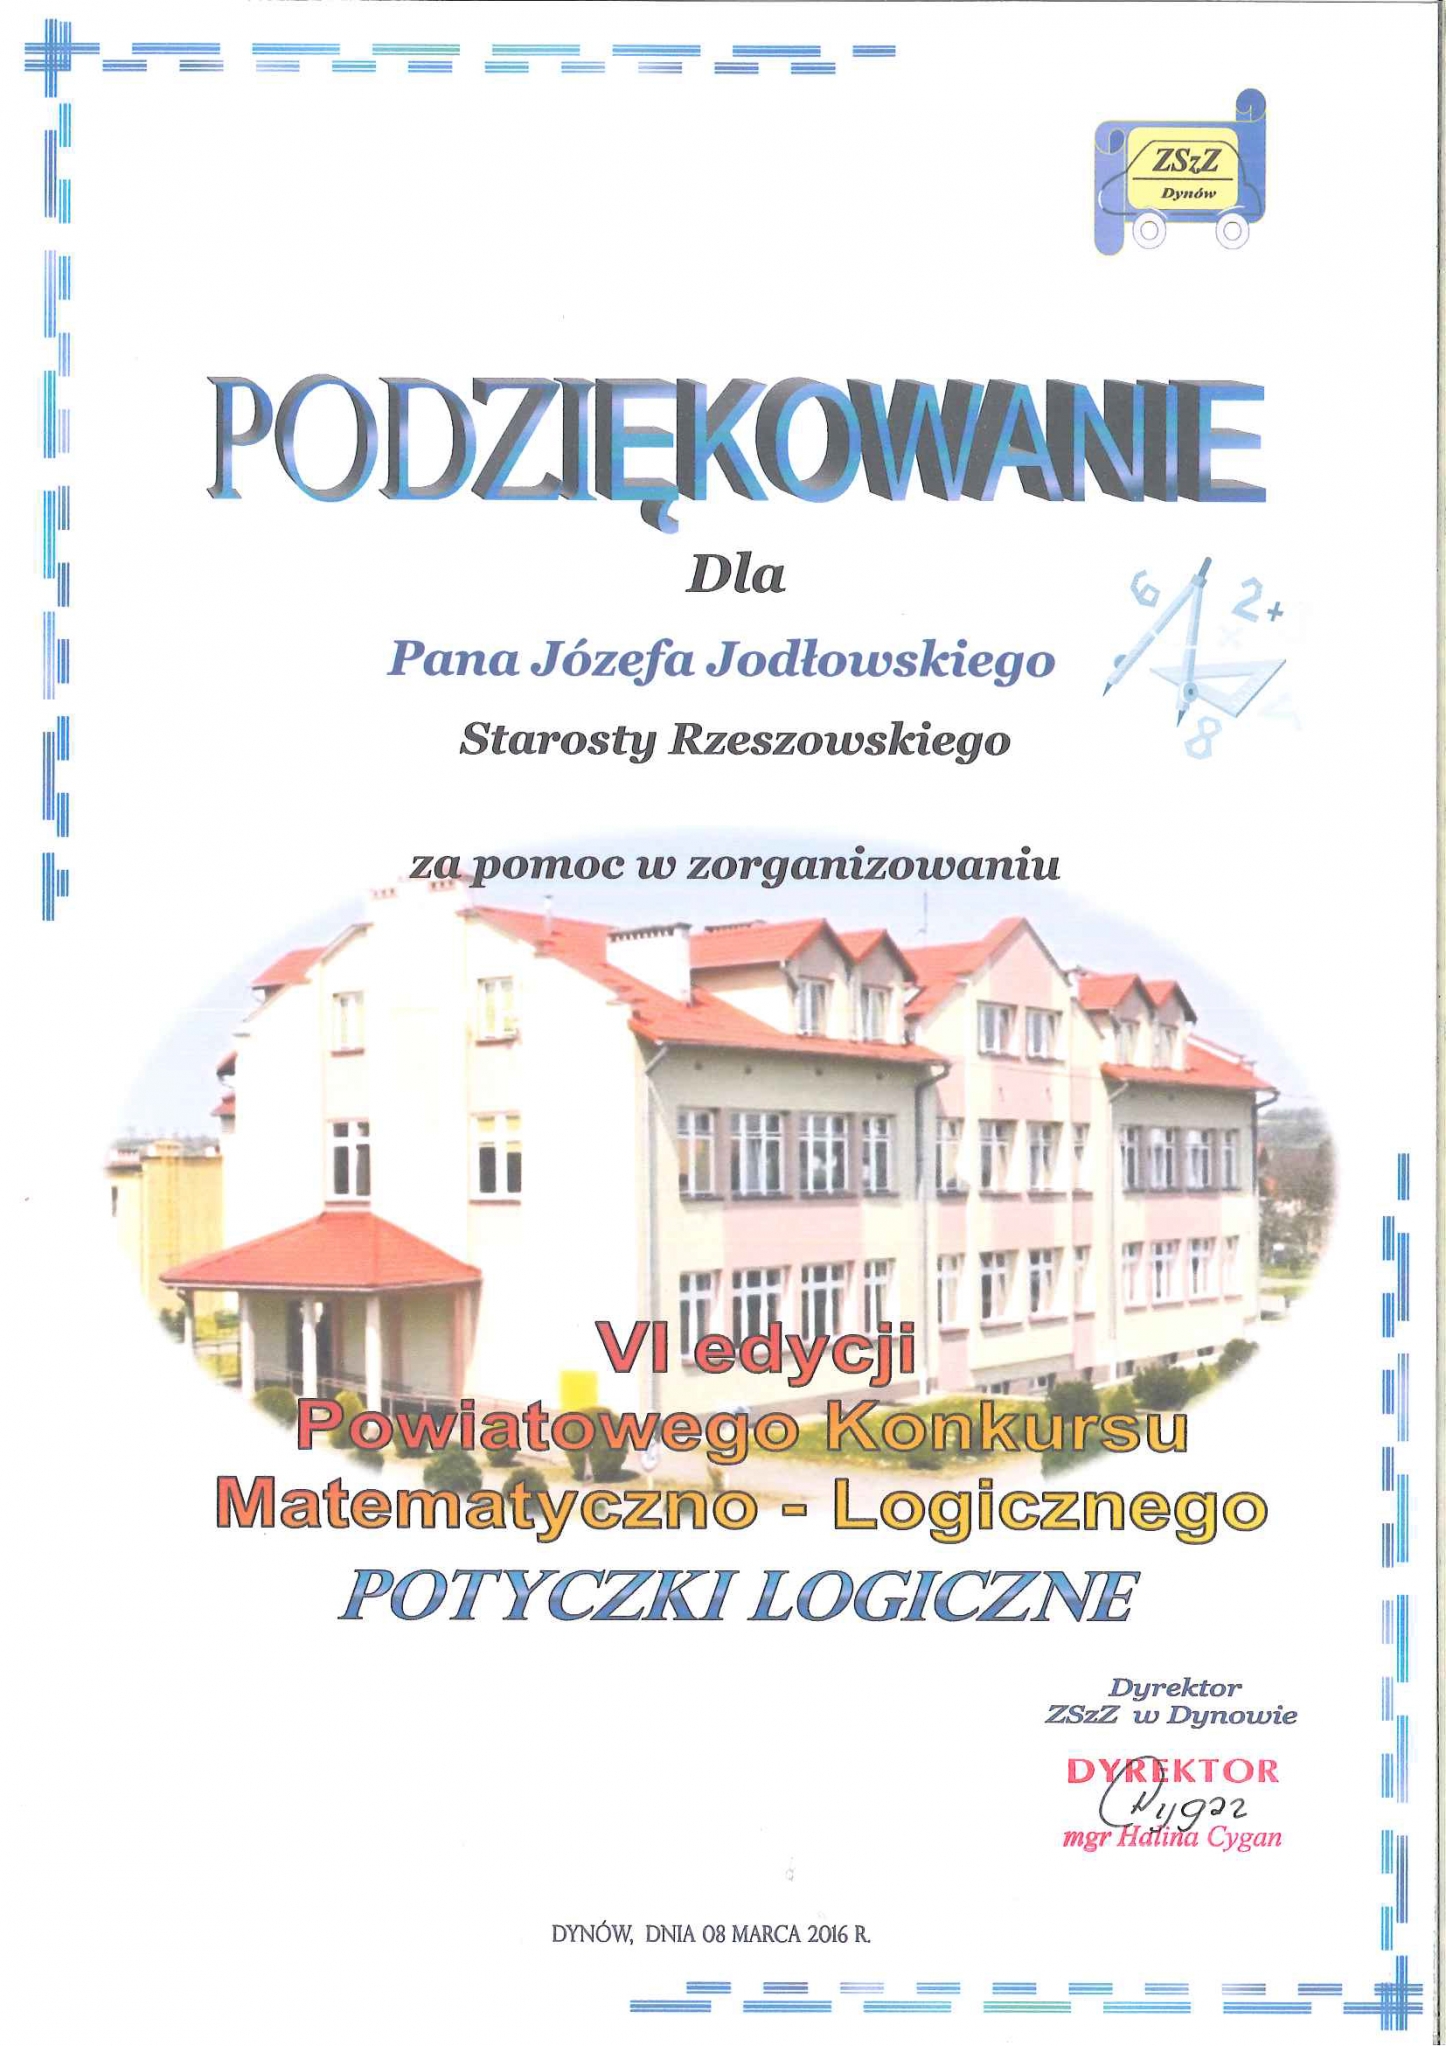 https://powiat.rzeszowski.pl/blog/2020/11/25/wyroznienia-i-wspolpraca-z-organizacjami/201612131346aa-jpg/